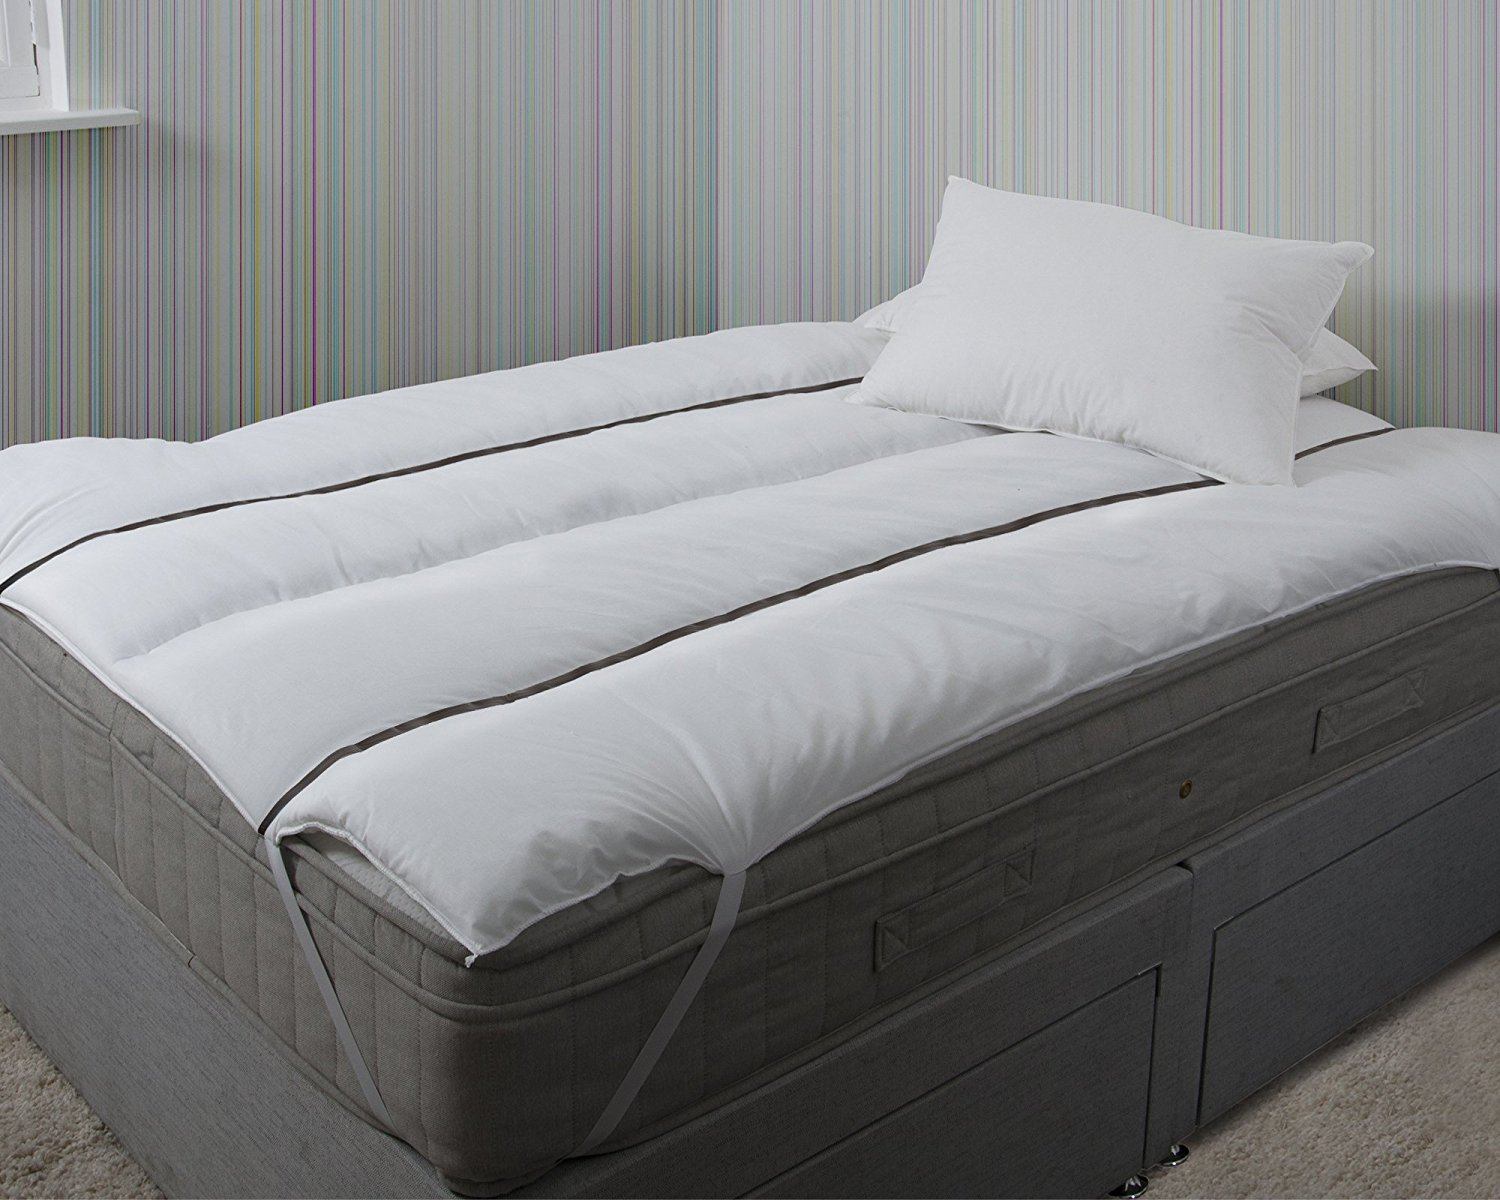 bedding direct mattress topper